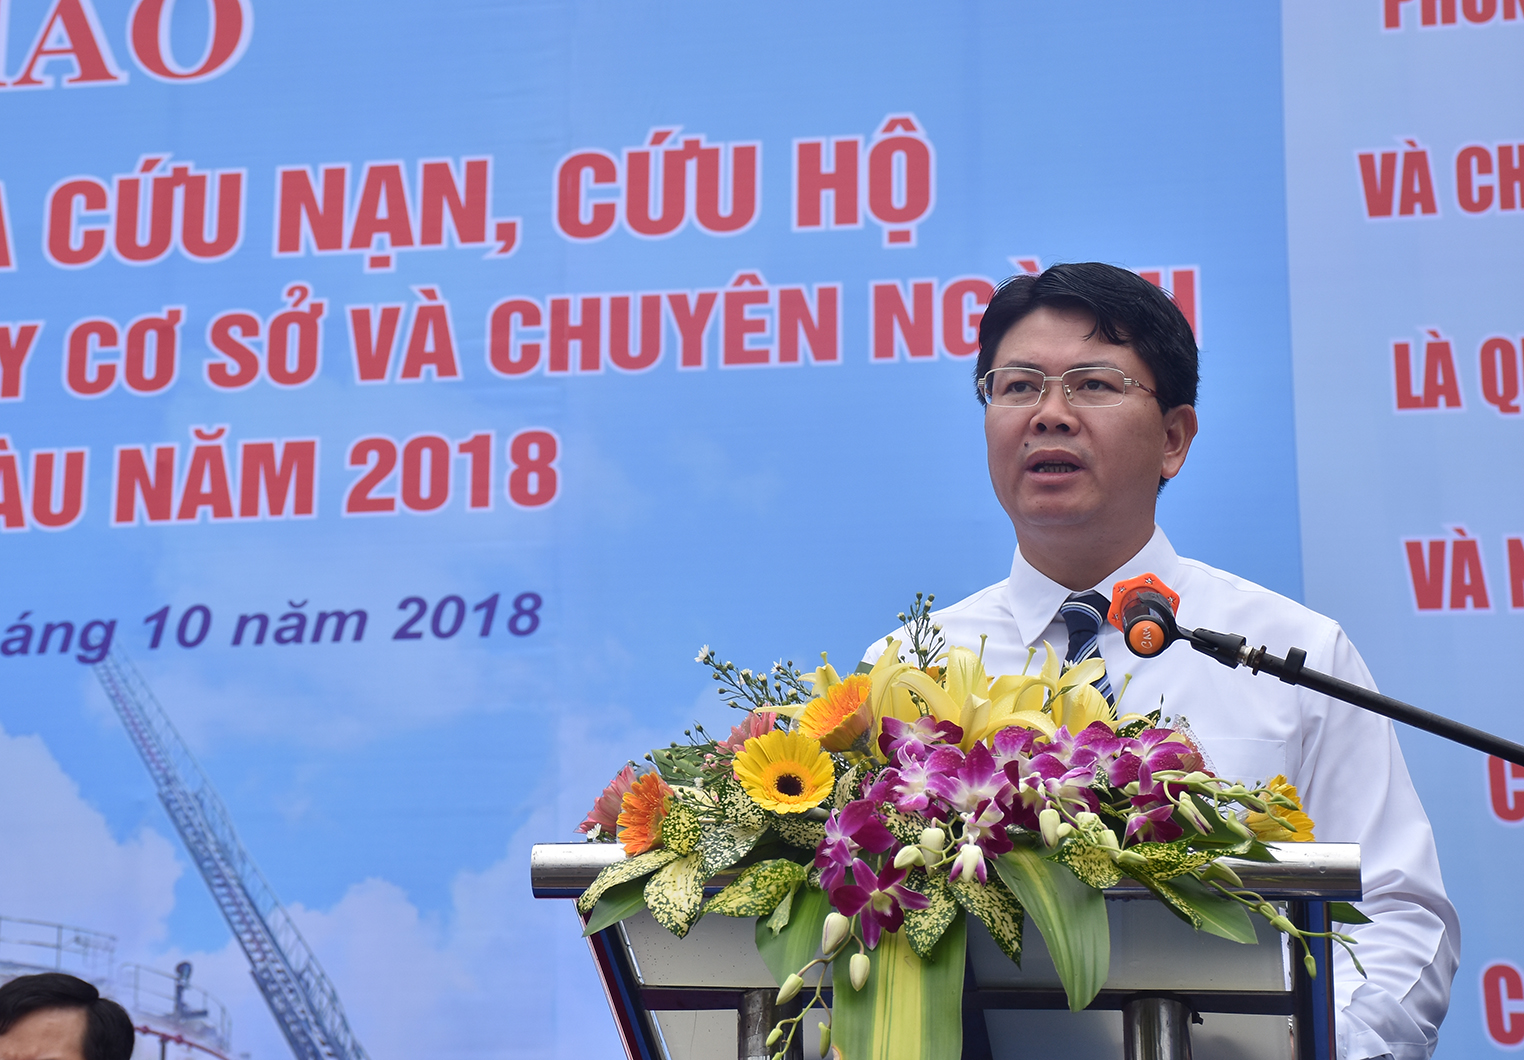 Đồng chí Nguyễn Thanh Tịnh, Phó Chủ tịch UBND tỉnh, Trưởng Ban Chỉ đạo công tác PCCC và cứu nạn cứu hộ tỉnh phát biểu tại hội thi.